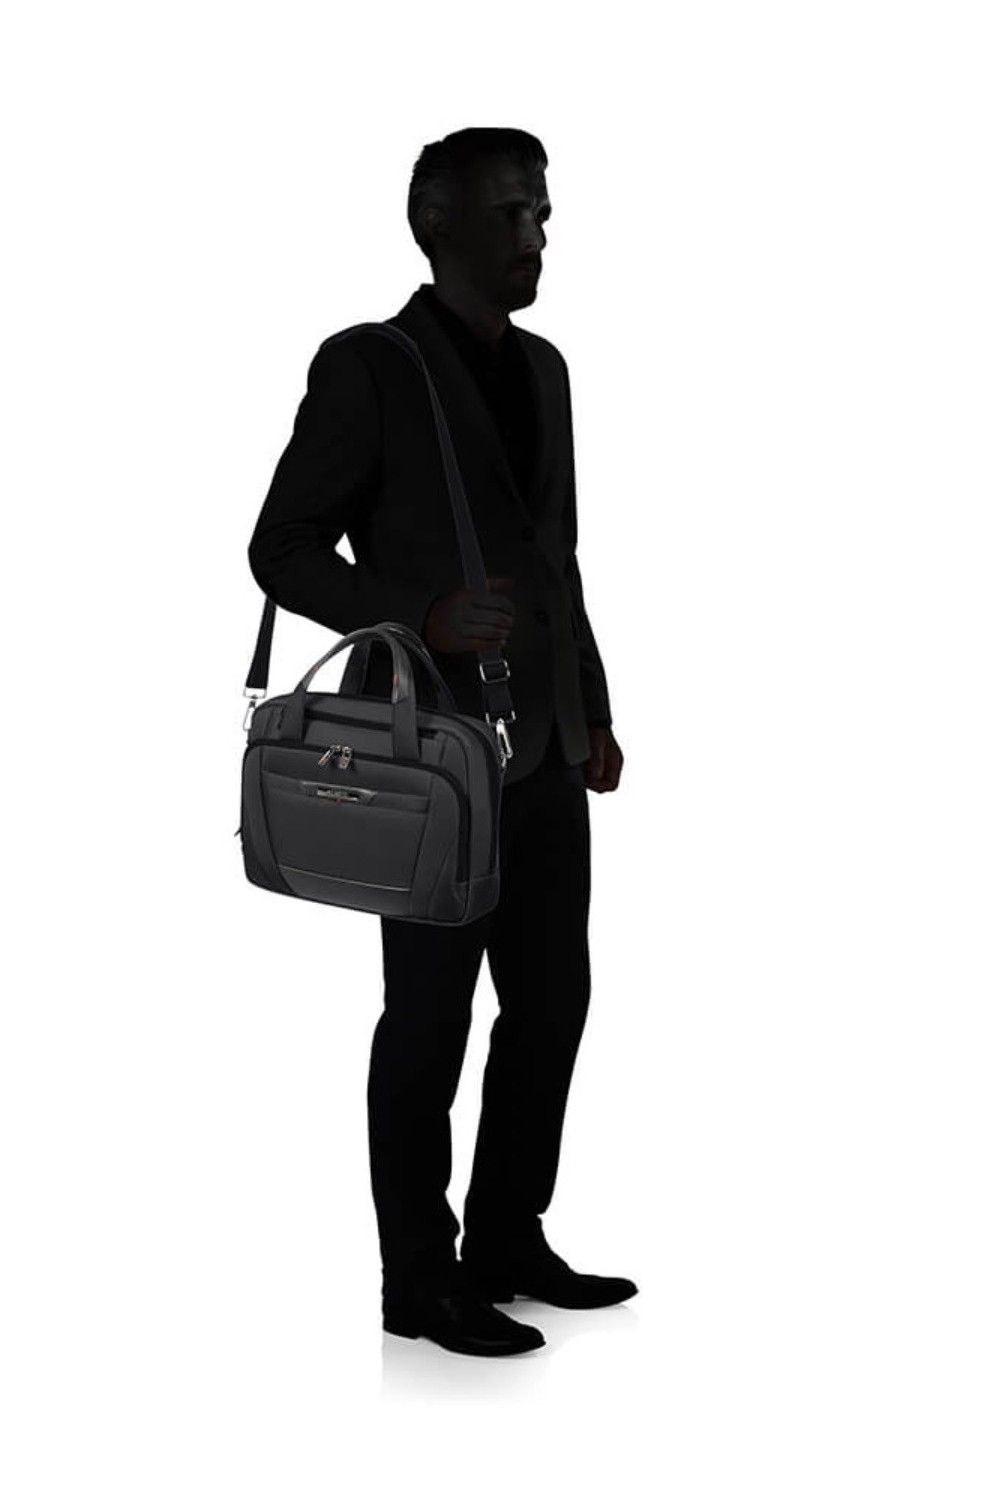 Samsonite Briefcase Pro DLX 5 14.1 inch 8.5 liter black